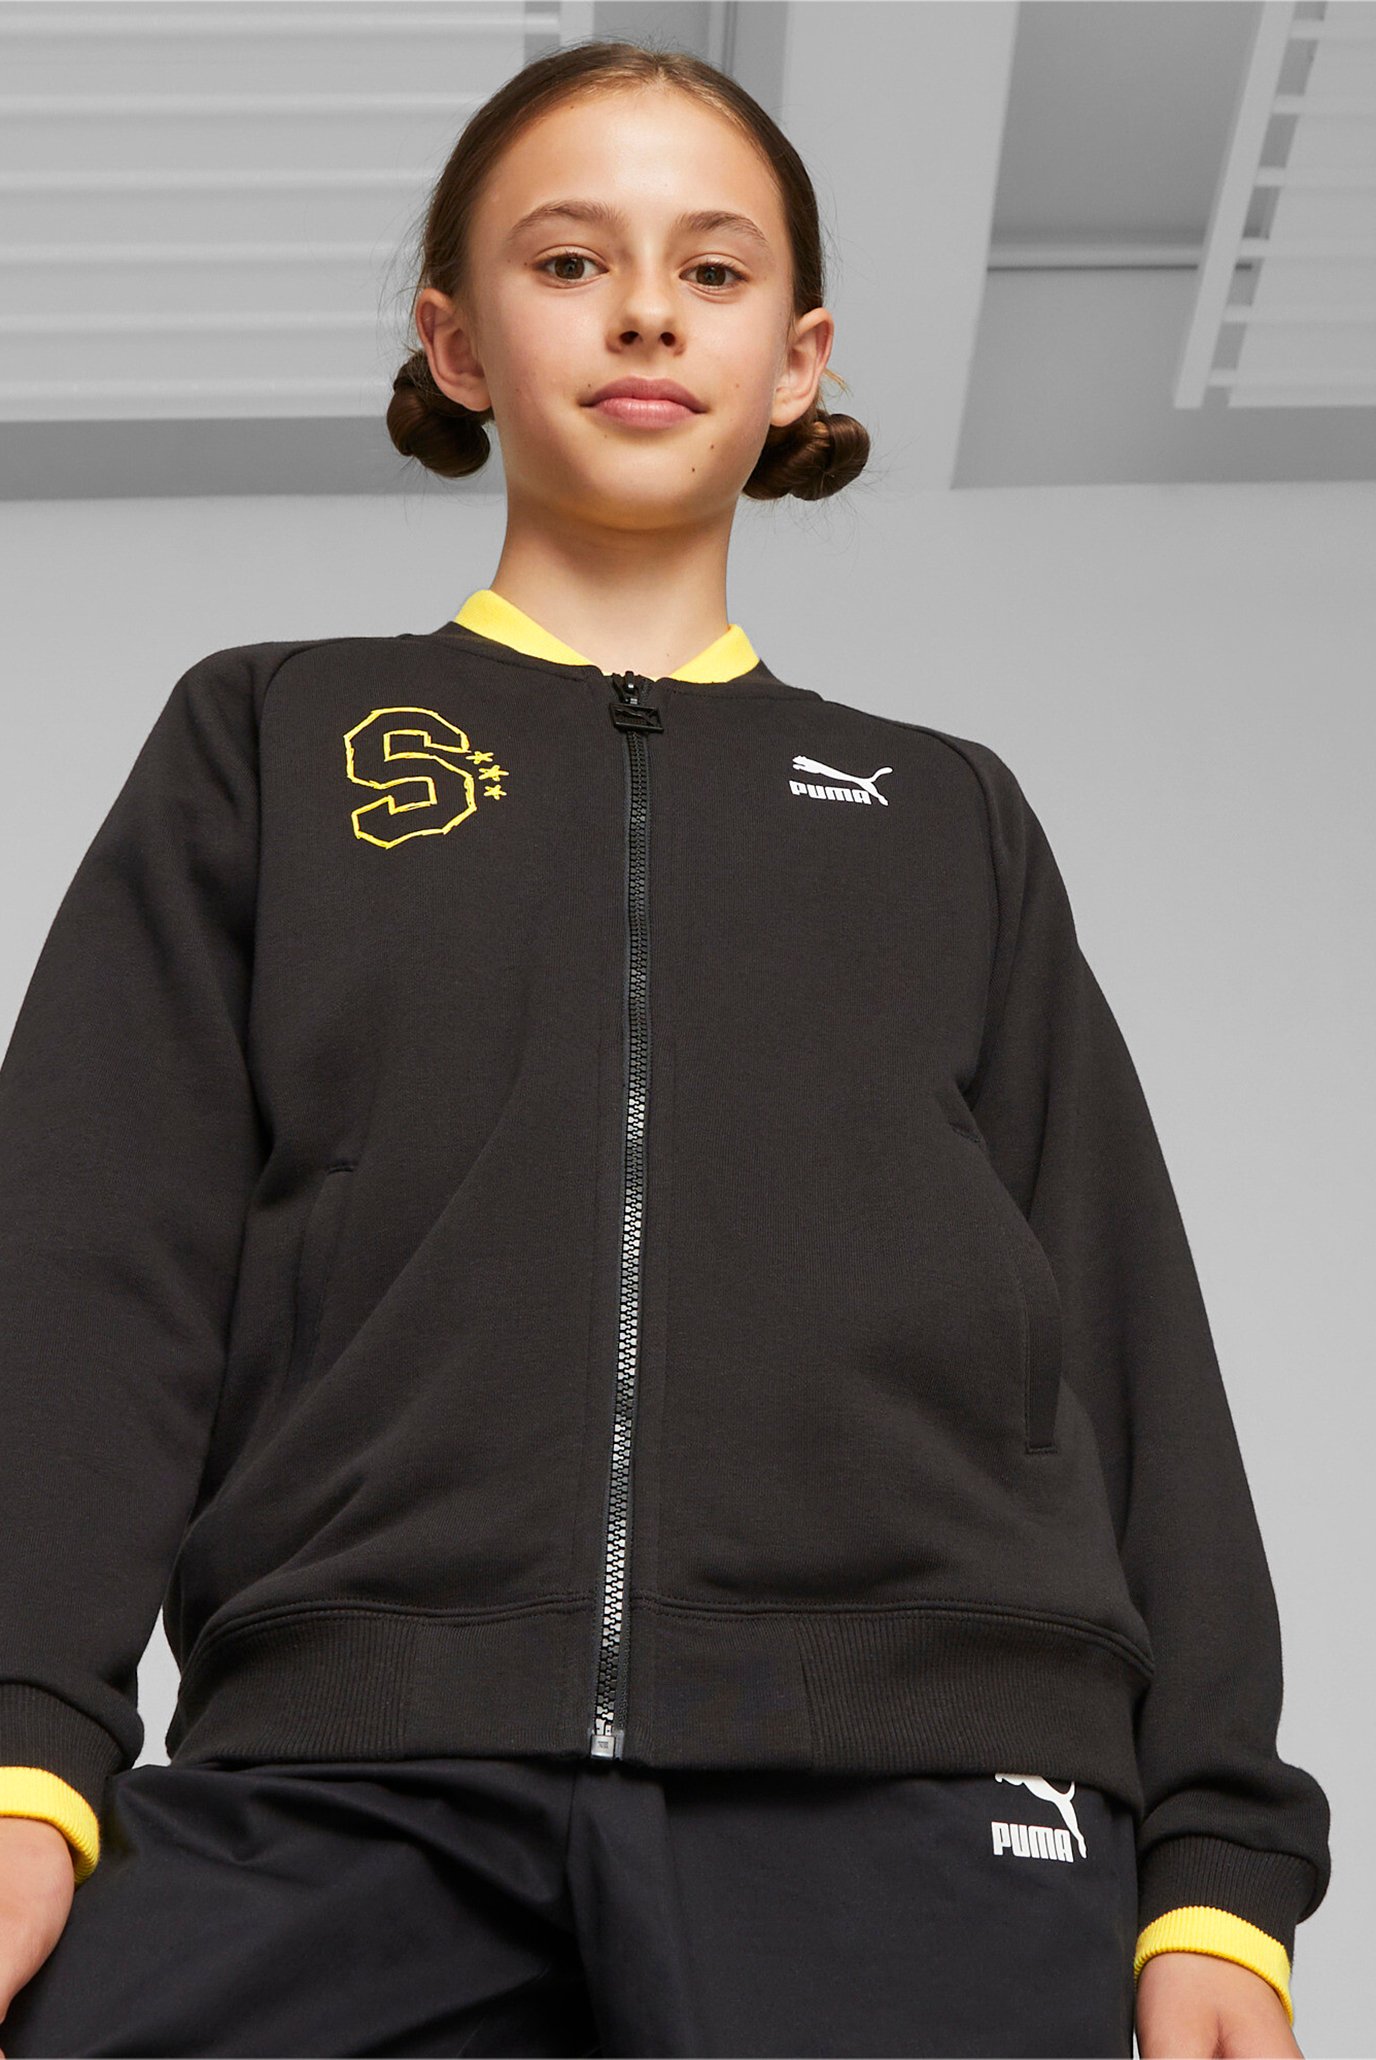 Дитяча чорна спортивна кофта PUMA x SPONGEBOB SQUAREPANTS Youth Jacket 1